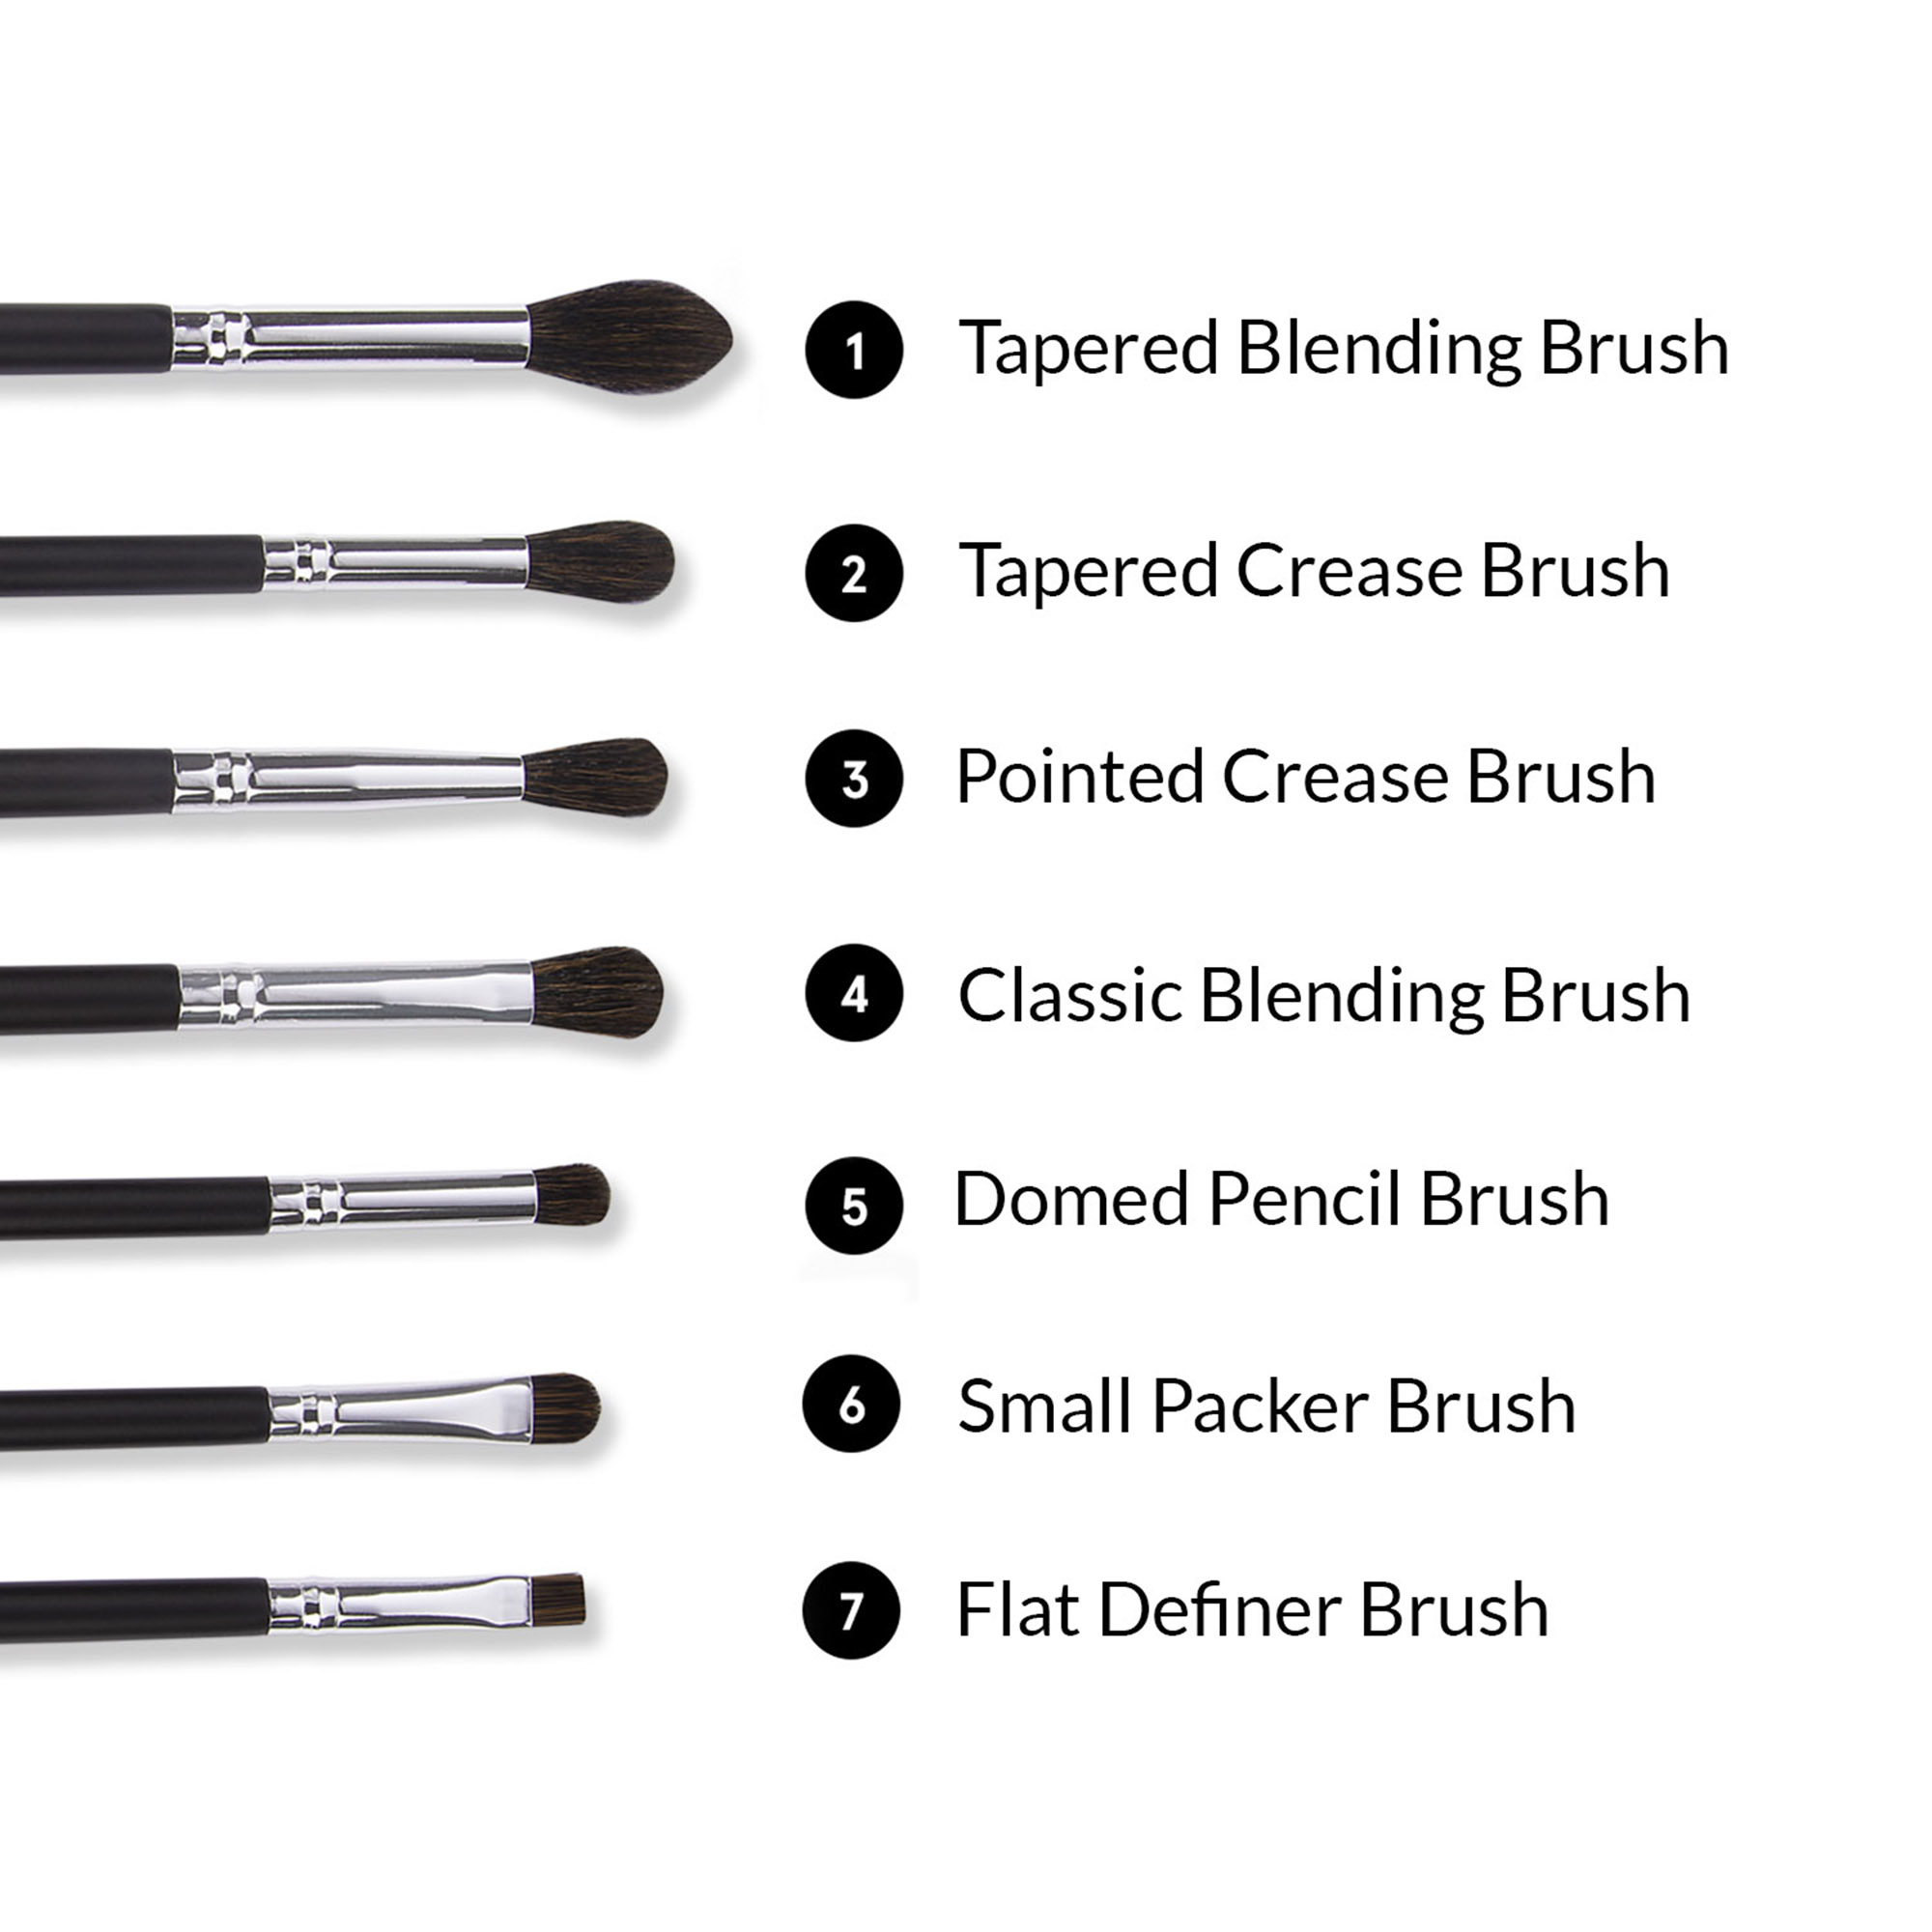 1 Tapered Blending Brush , 2 Tapered Crease Brush, 3 Pointed Crease Brush, 4 Classic Blending Brush, 5 Domed Pencil Brush, 6 Small Packer brush, 7 Flat Definer Brush